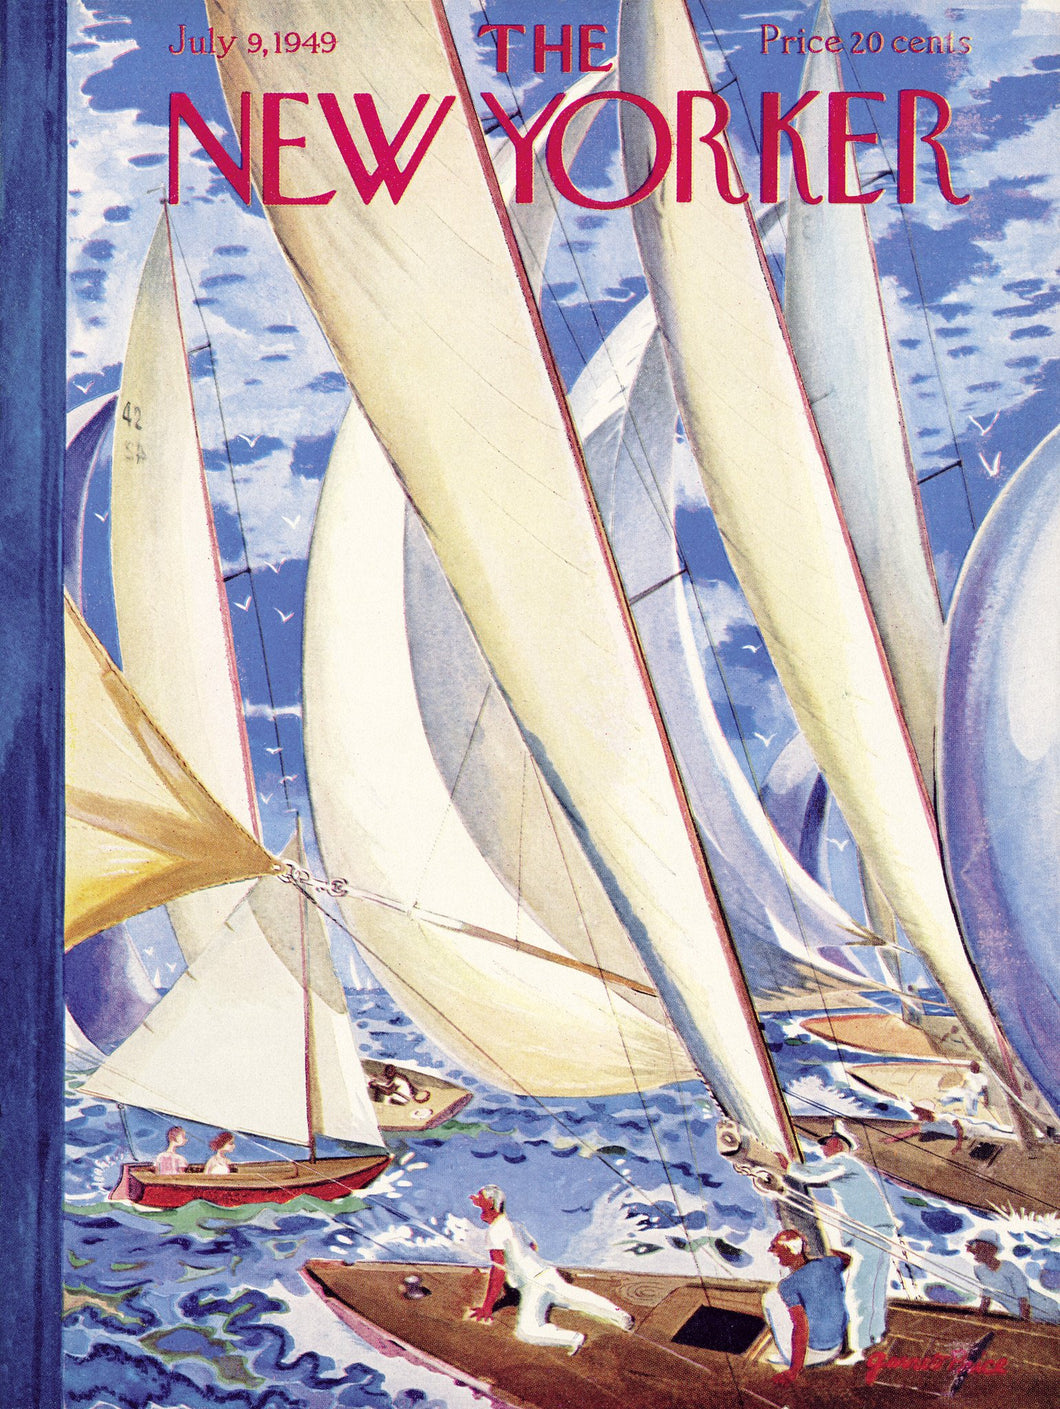 The New Yorker-Regatta Puzzle